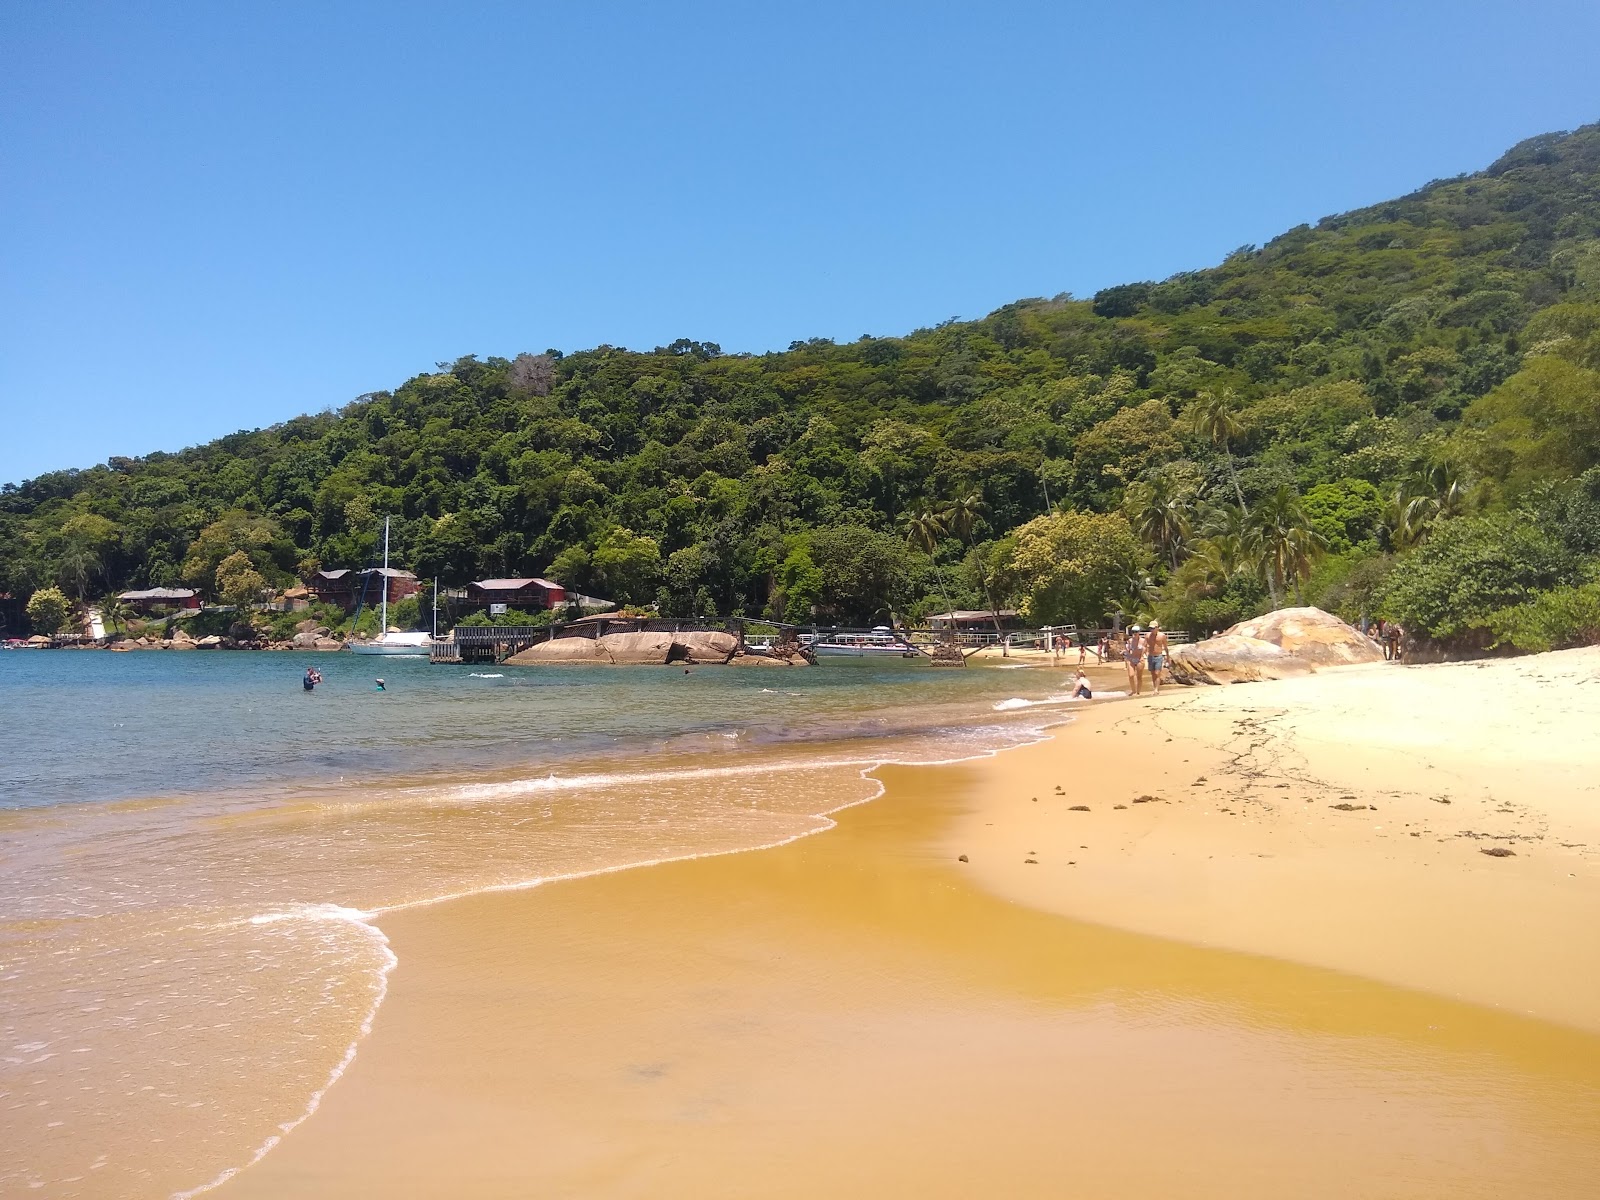 Foto af Praia de Camiranga - populært sted blandt afslapningskendere